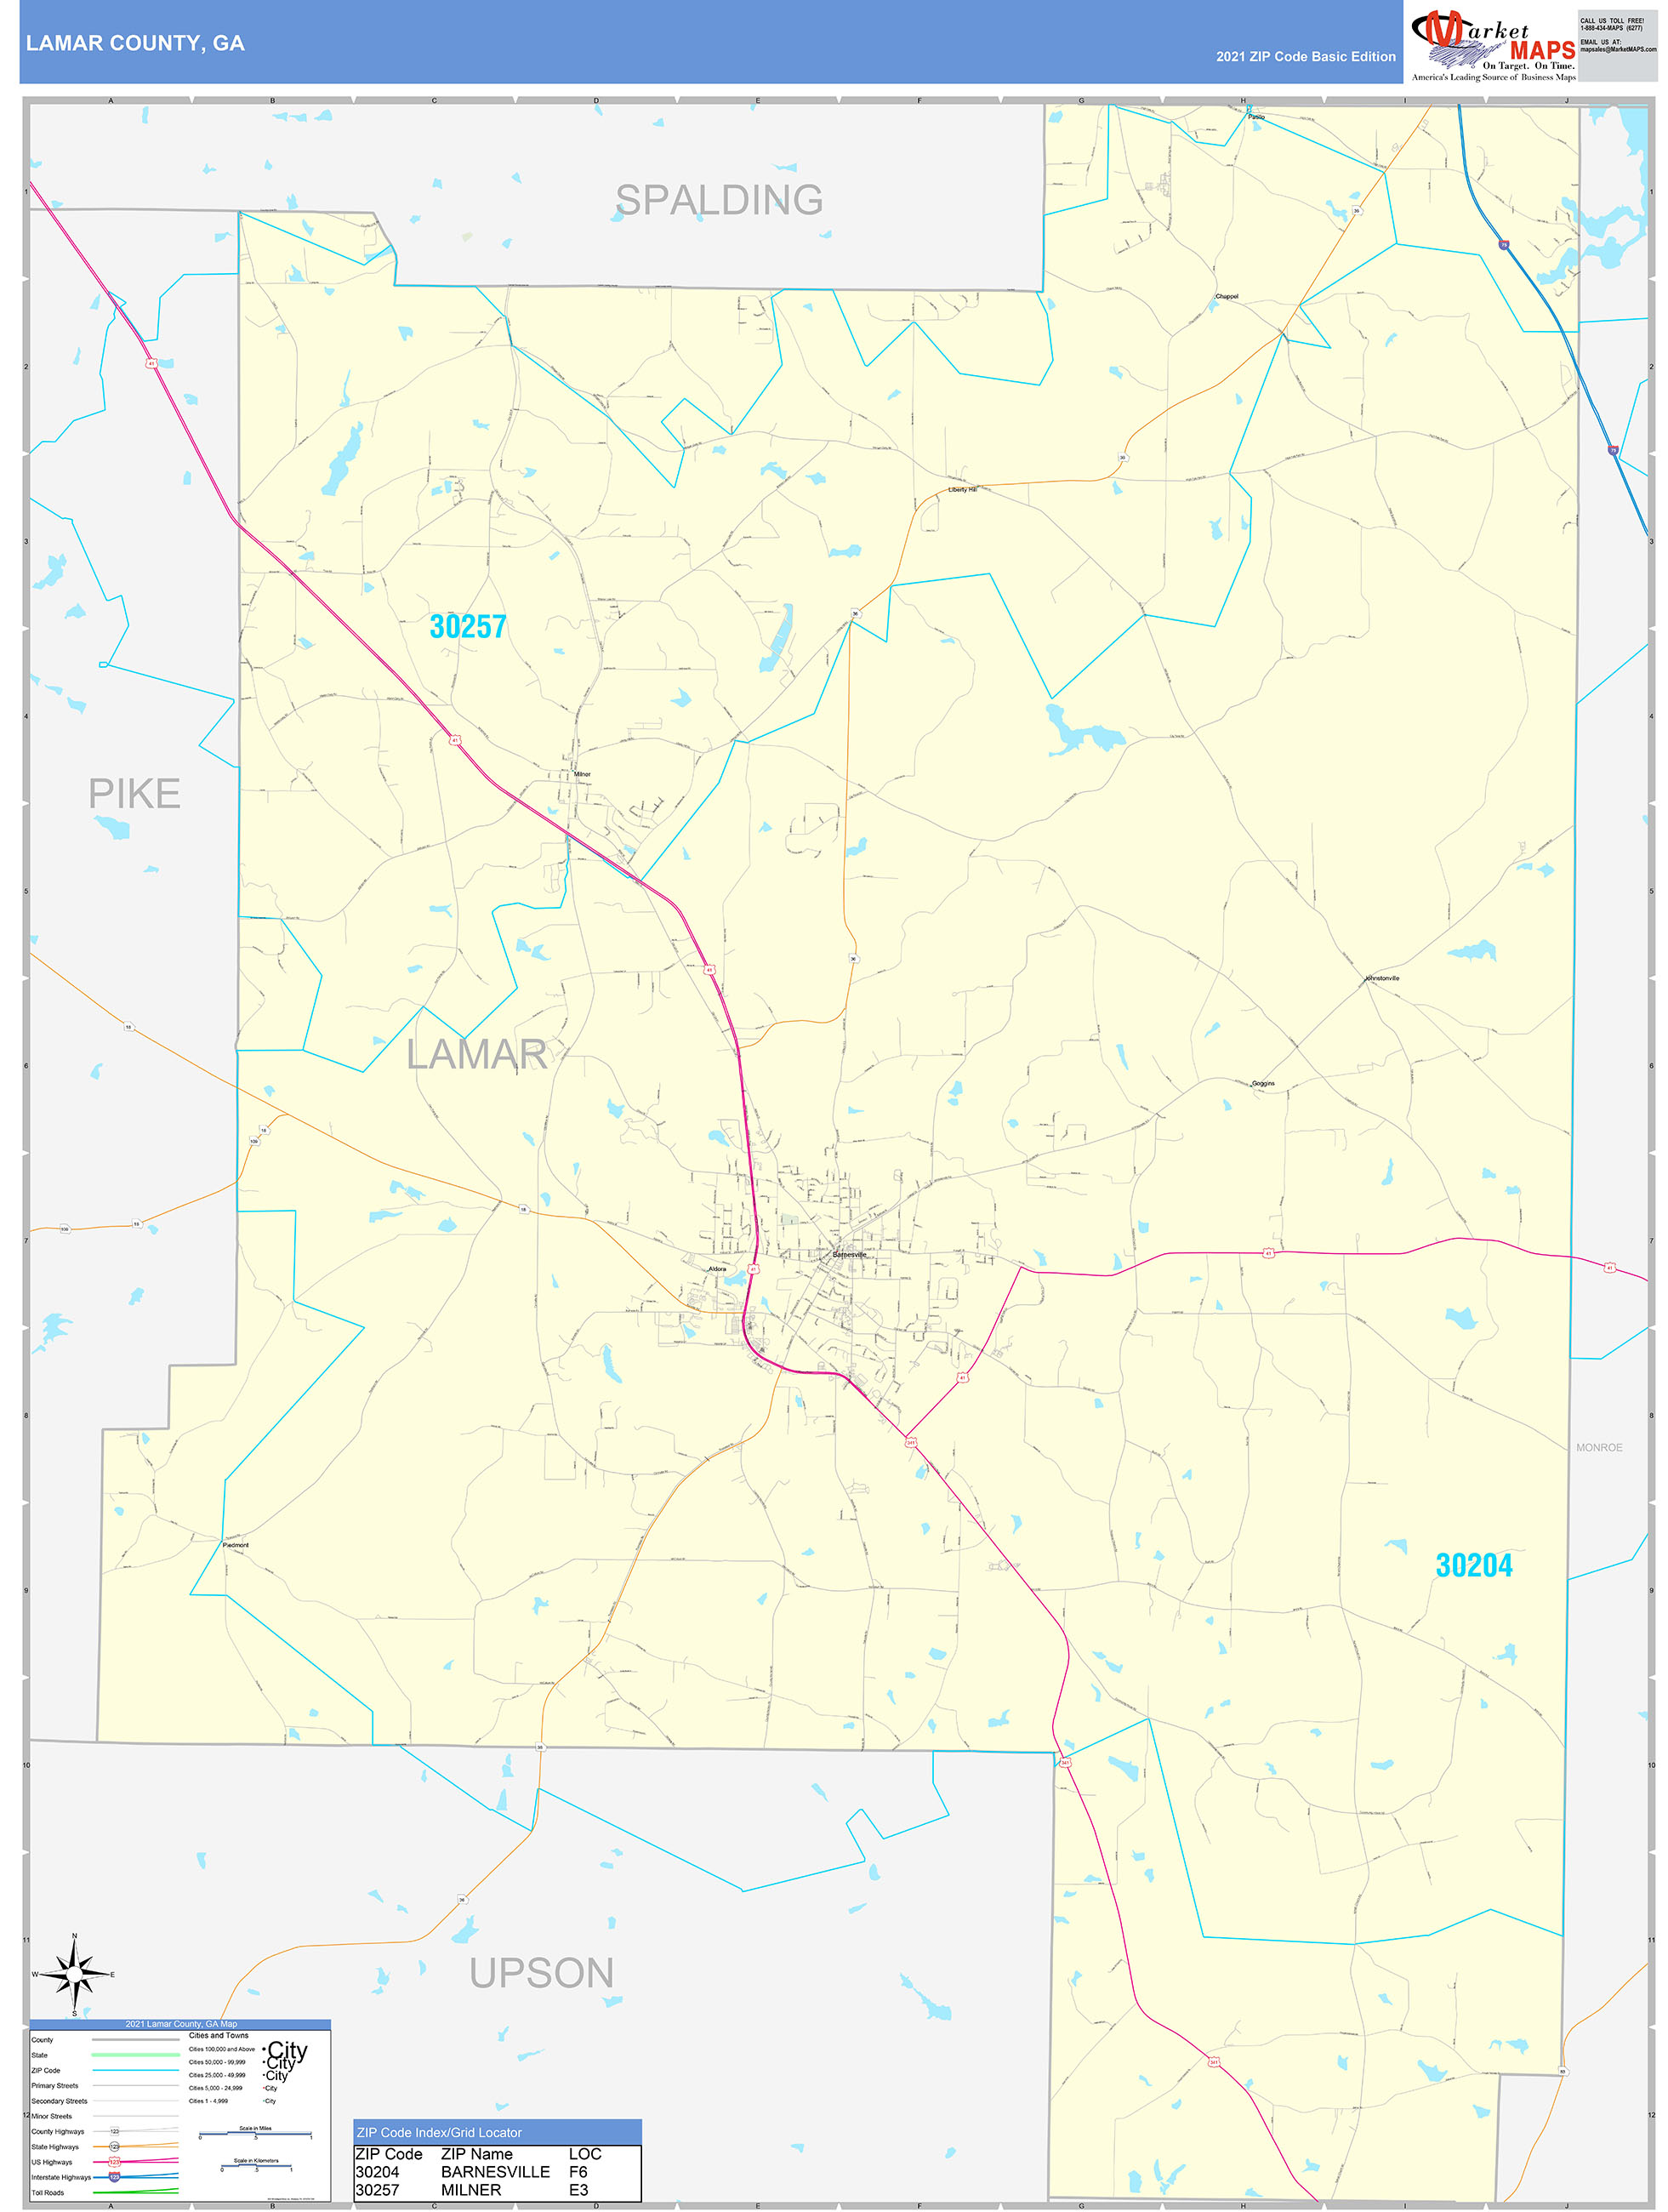 Lamar County, GA Zip Code Wall Map Basic Style by MarketMAPS - MapSales